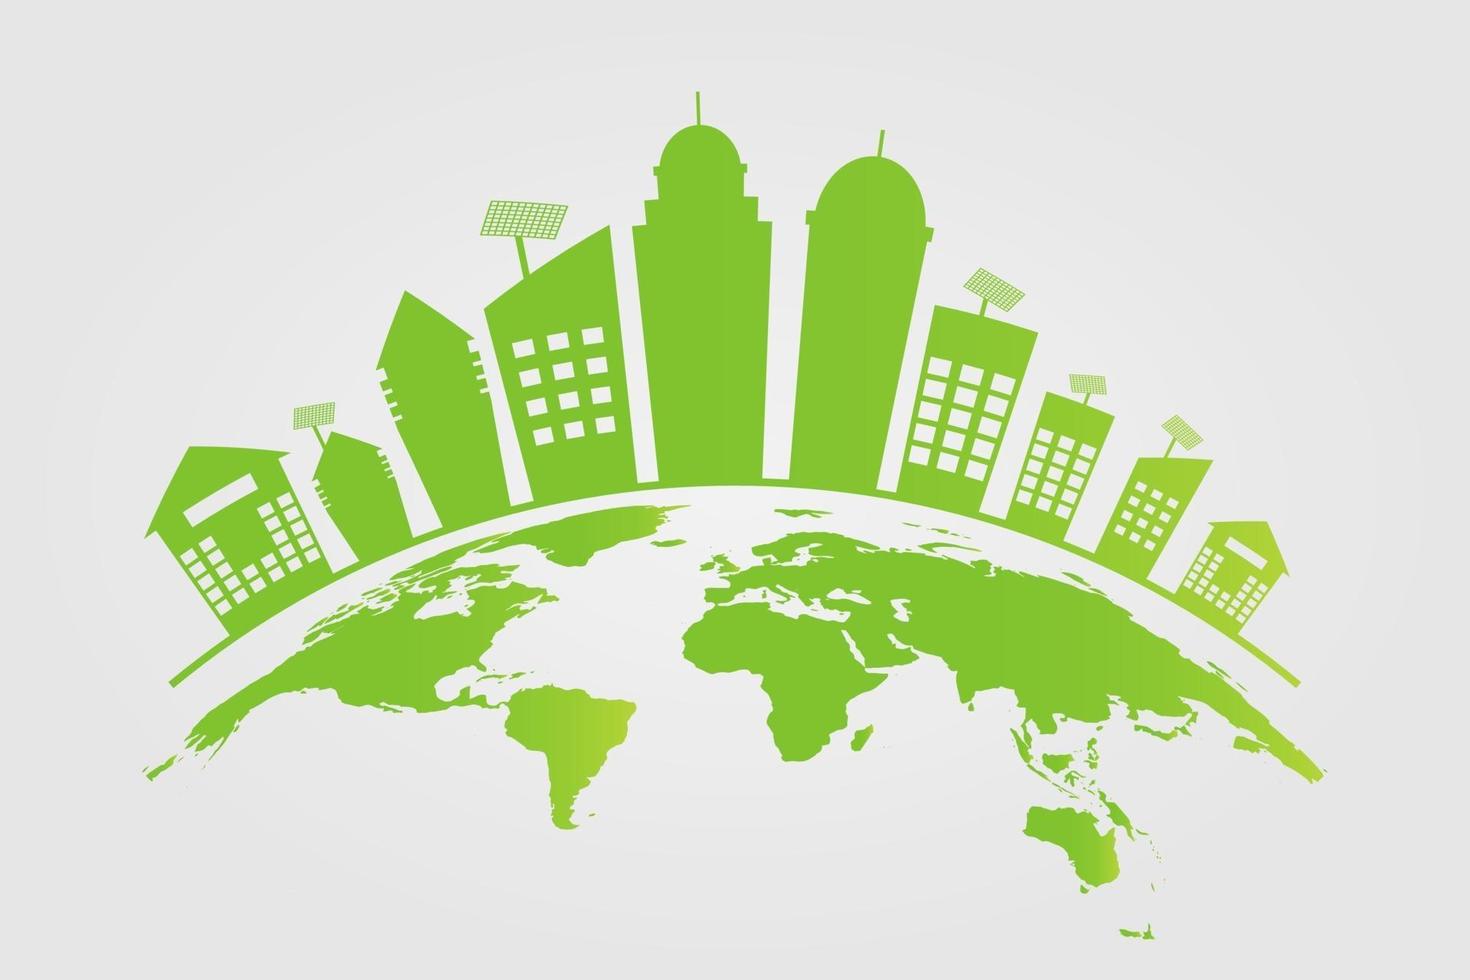 écologie les villes vertes aident le monde avec des idées de concept écologiques vecteur